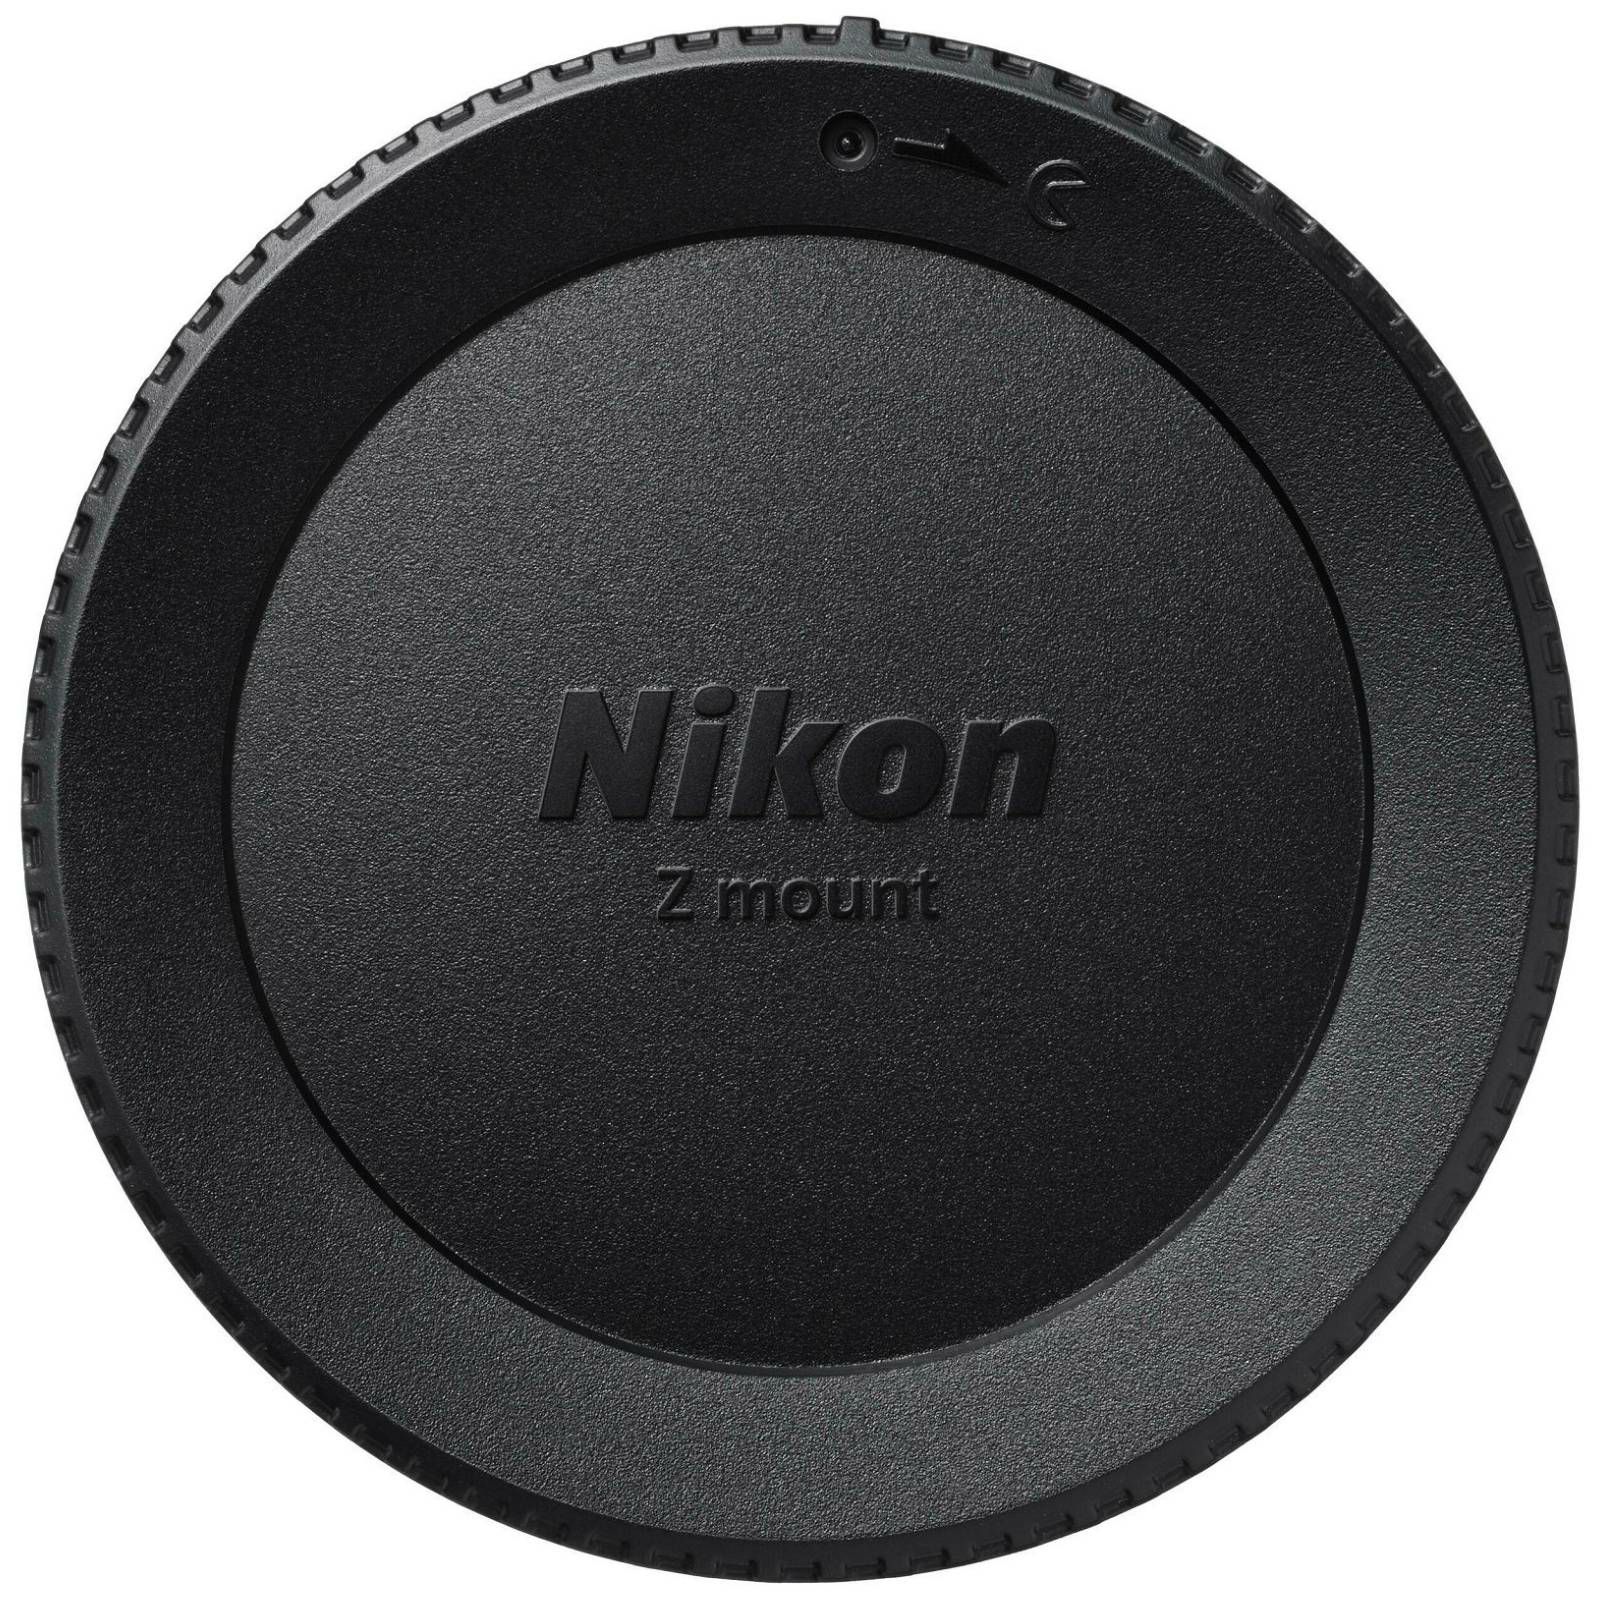 Nikon Z fc + 16-50 f/3.5-6.3 VR (BK) + 50-250 f/4.5-6.3 VR Double zoom lens kit Black (VOA090KB03)